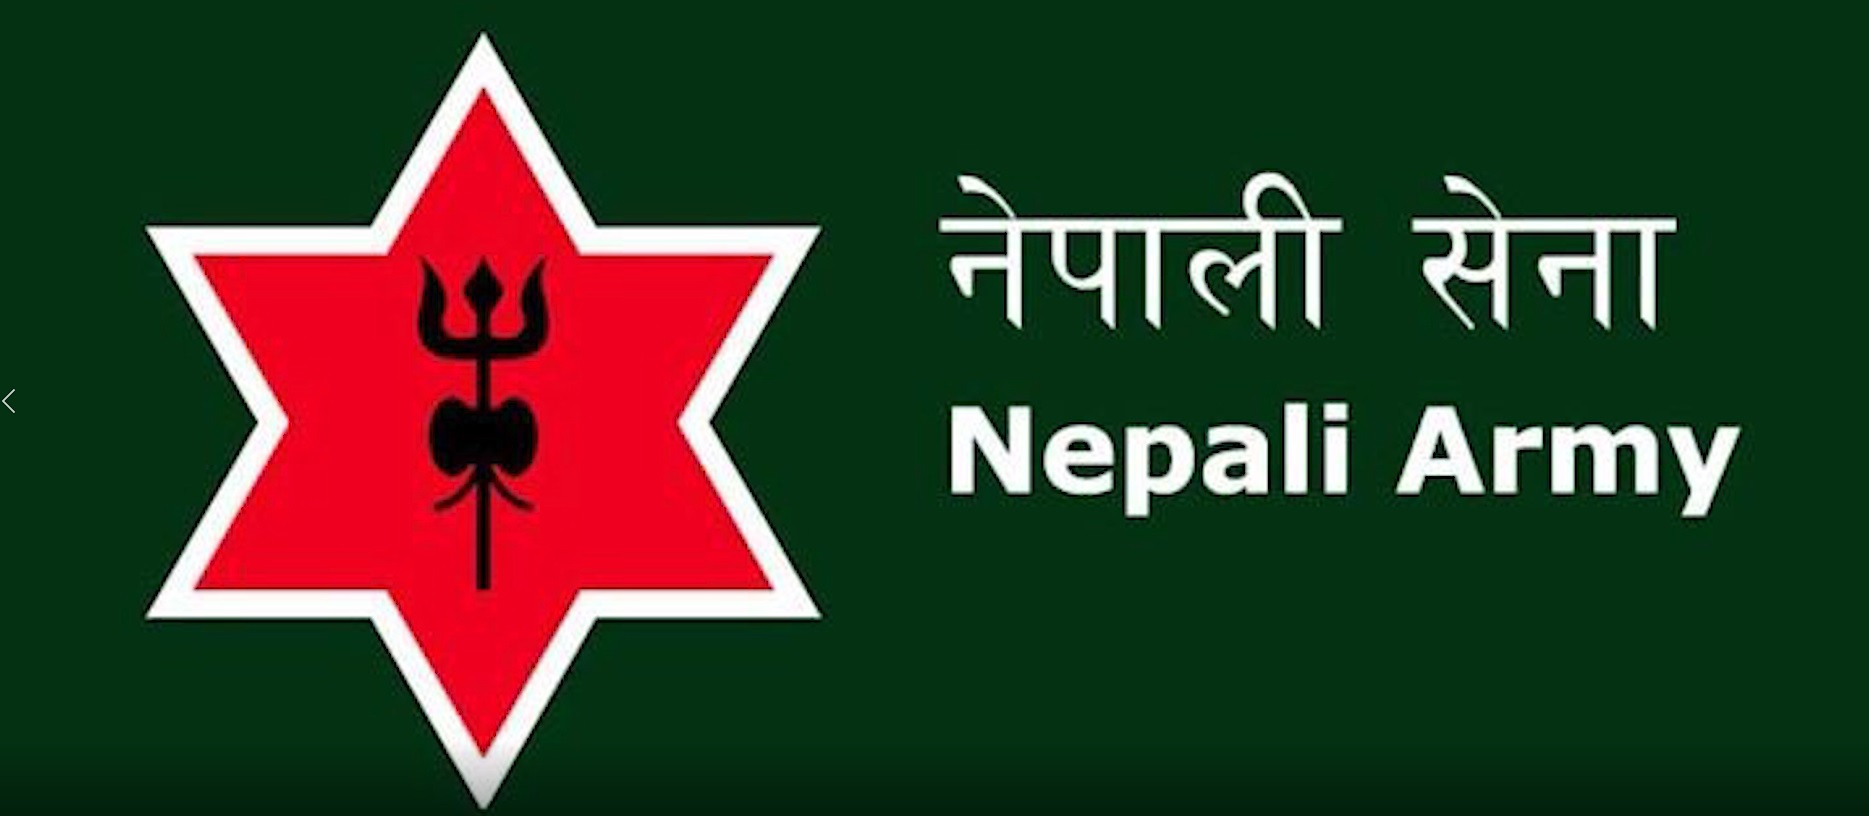 धेरै शान्ति सैनिक पठाउने मुलुकको सूचीमा नेपाल तेस्रो